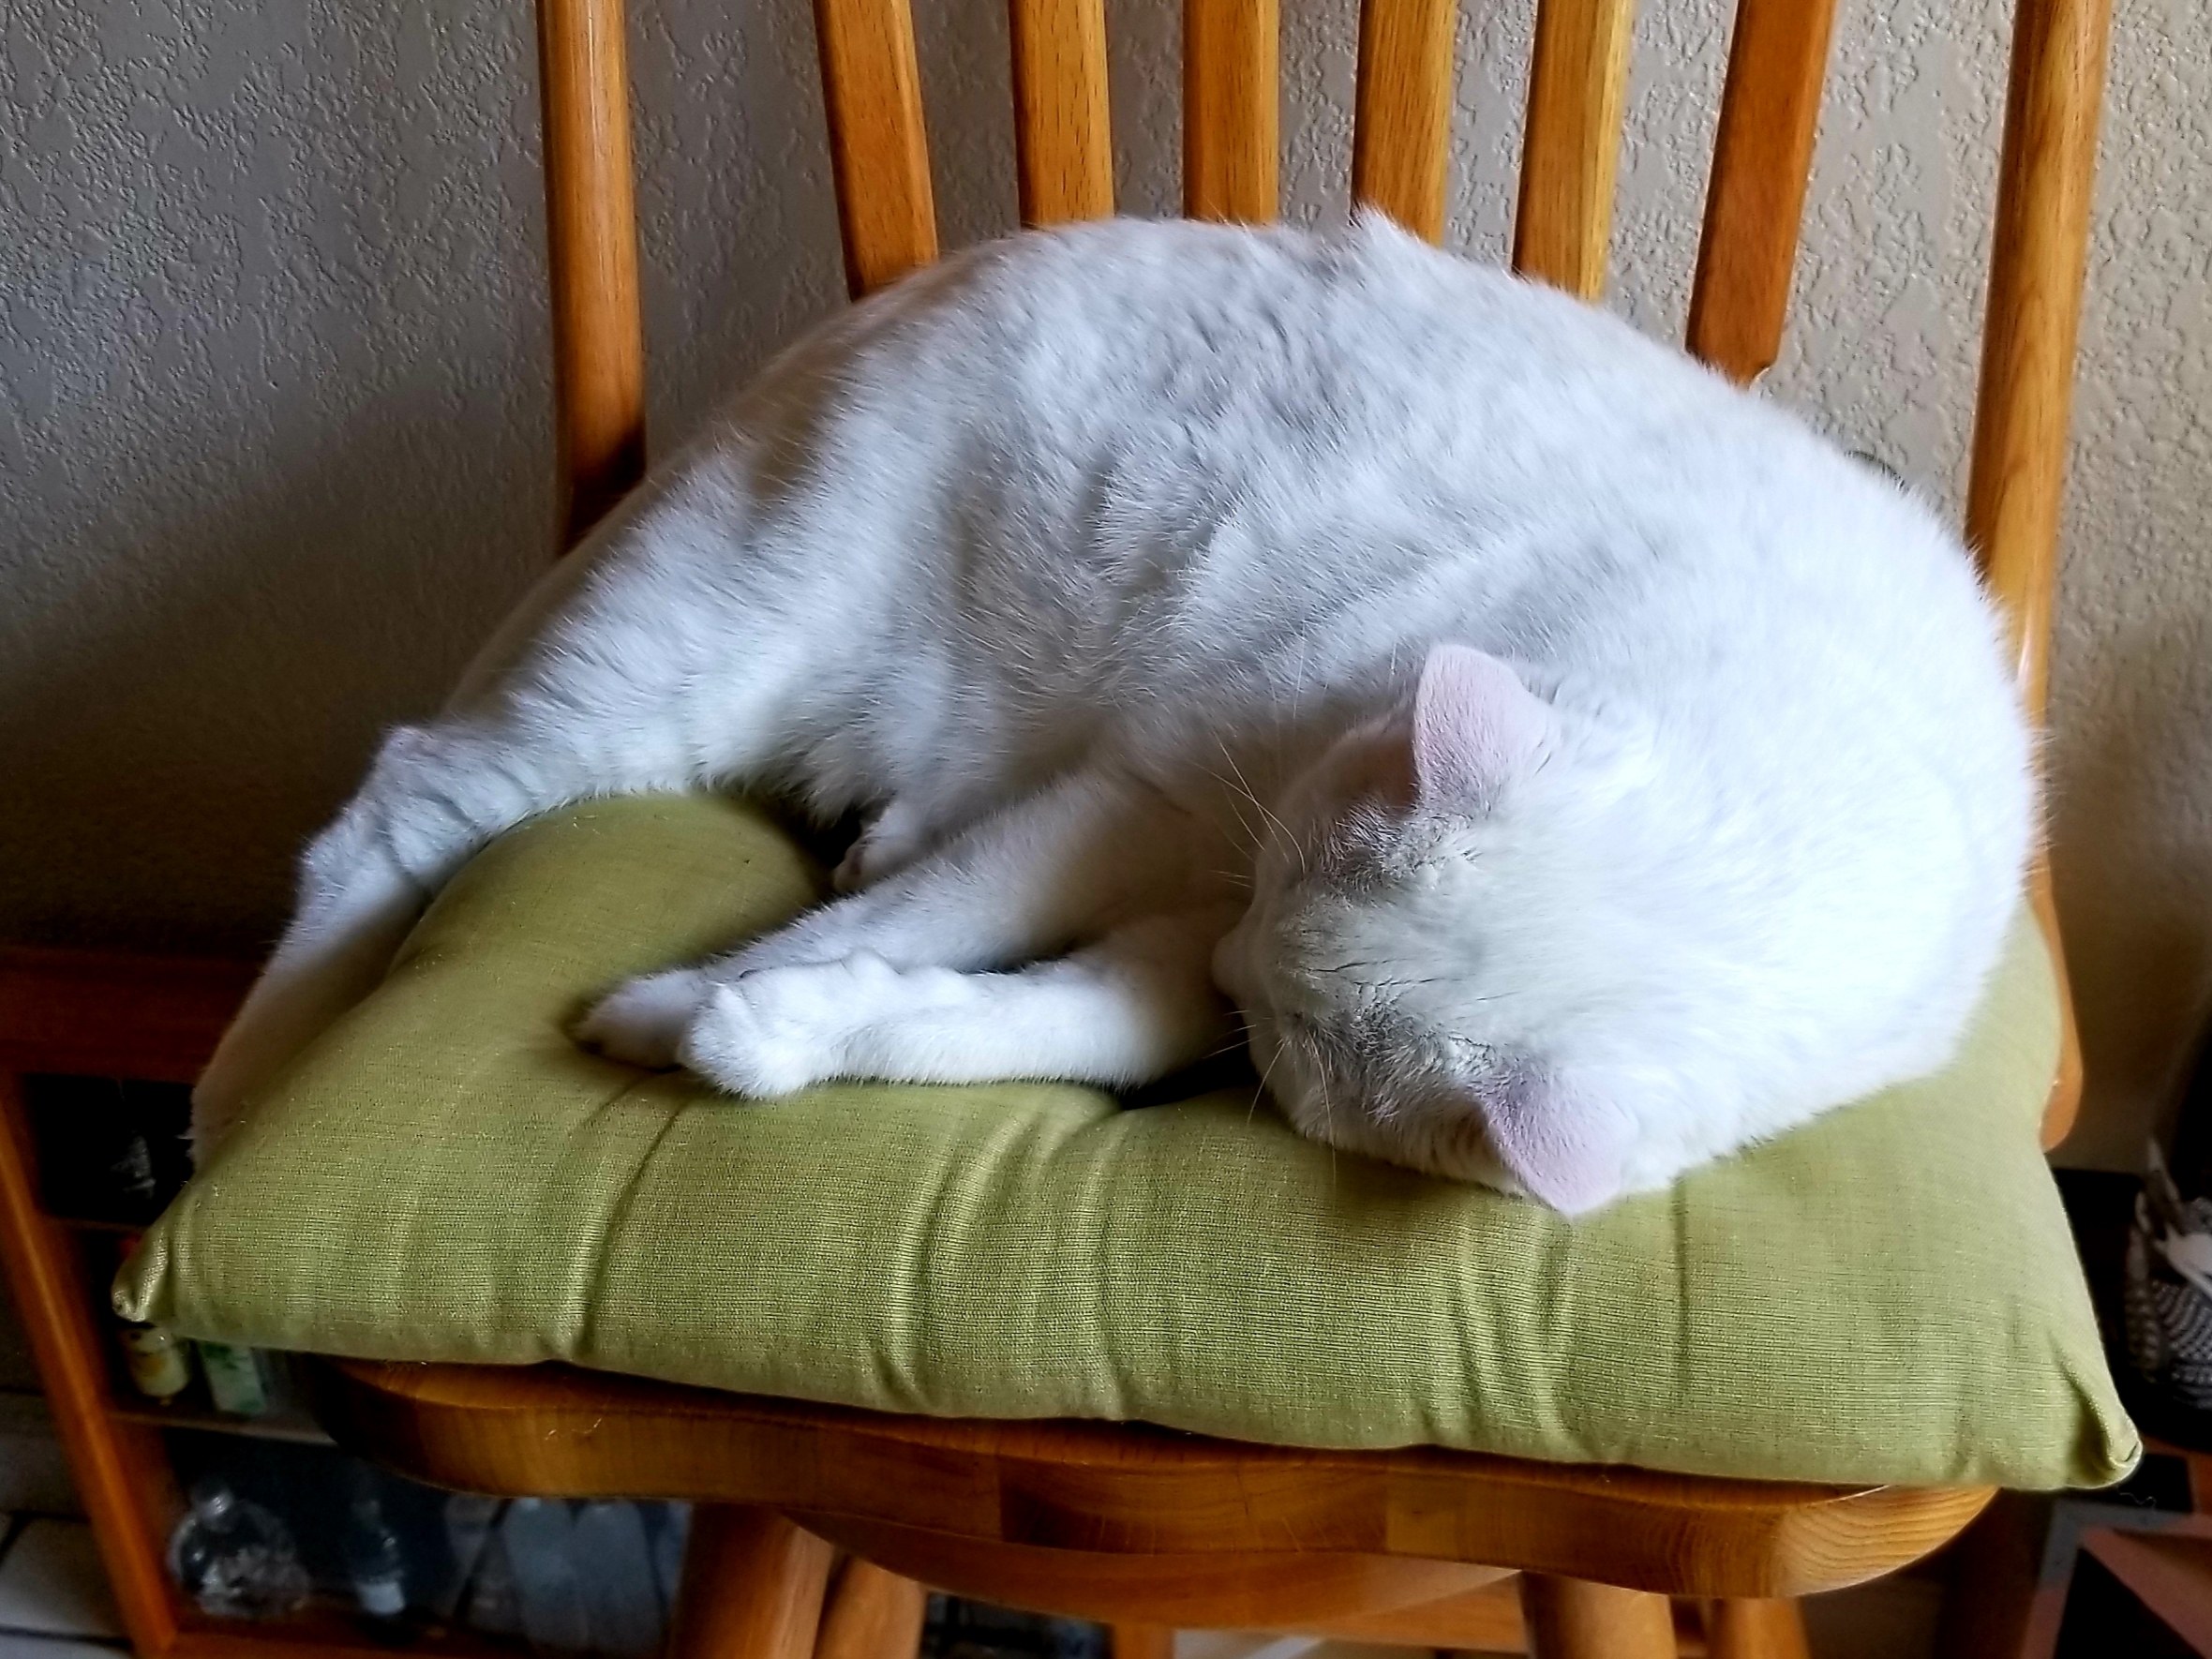 adoptable Cat in Brea,CA named Snowhite